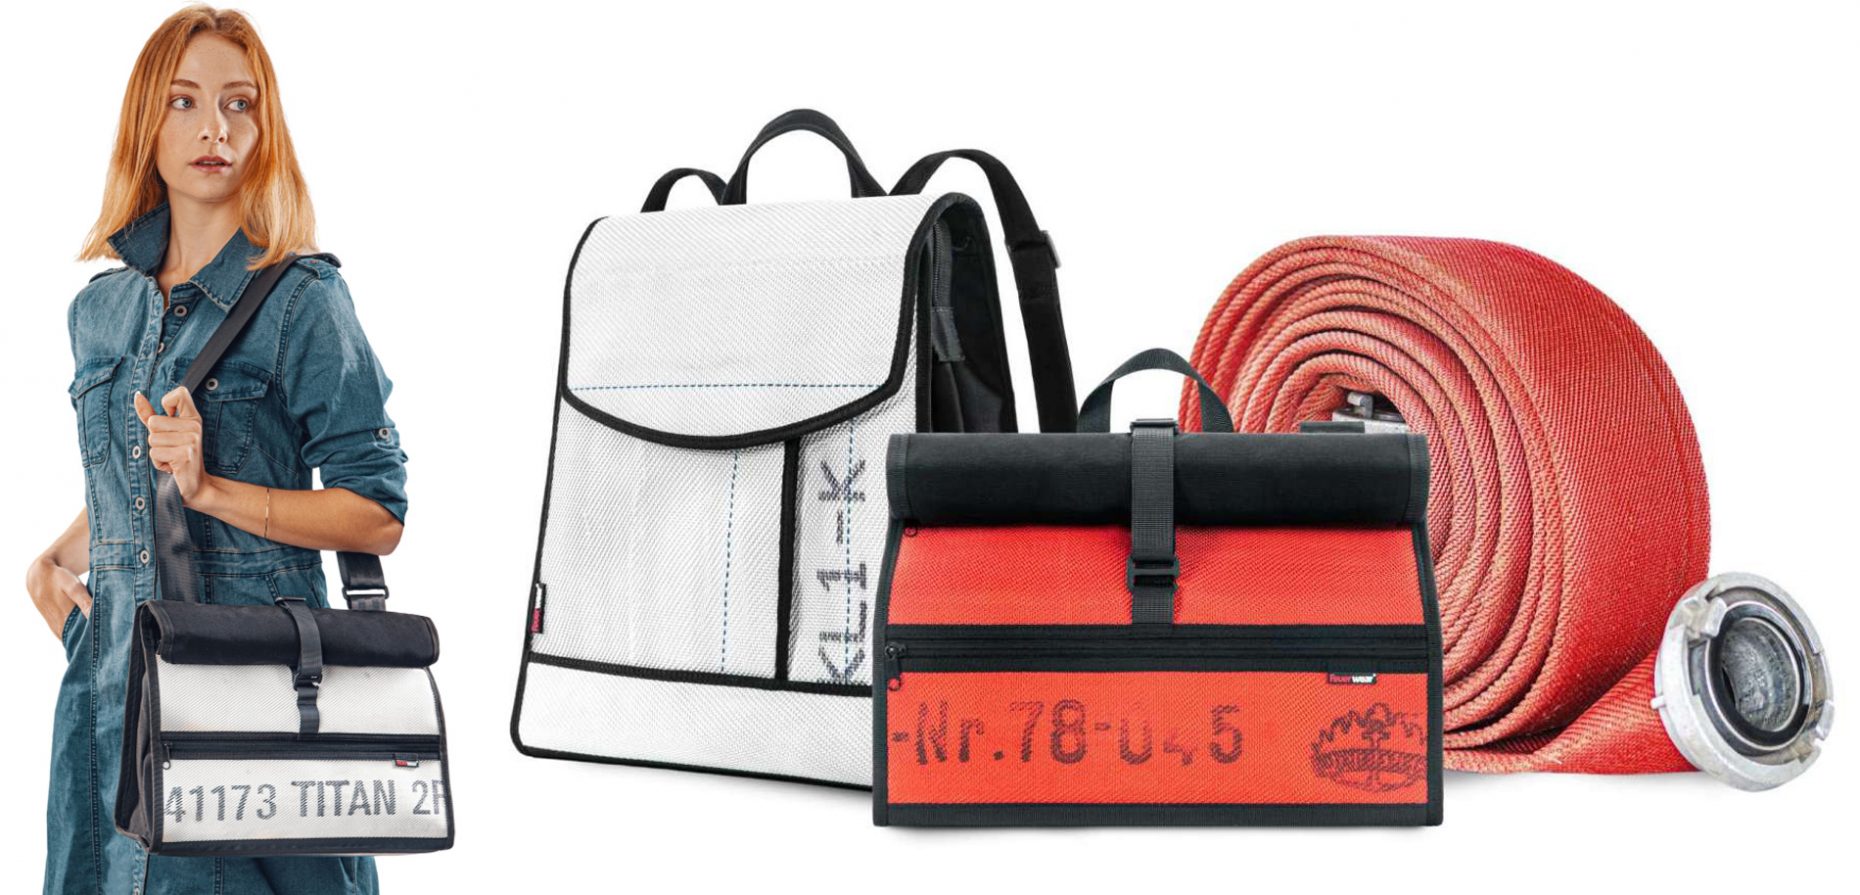 Für die Taschen und Rucksäcke von Feuerwear werden gebrauchte Feuerwehrschläuche aus Feuerwachen in ganz Deutschland gesammelt und recycelt. Ein Werkstoff, der prädestiniert ist für Accessoires, die viel auszuhalten haben.